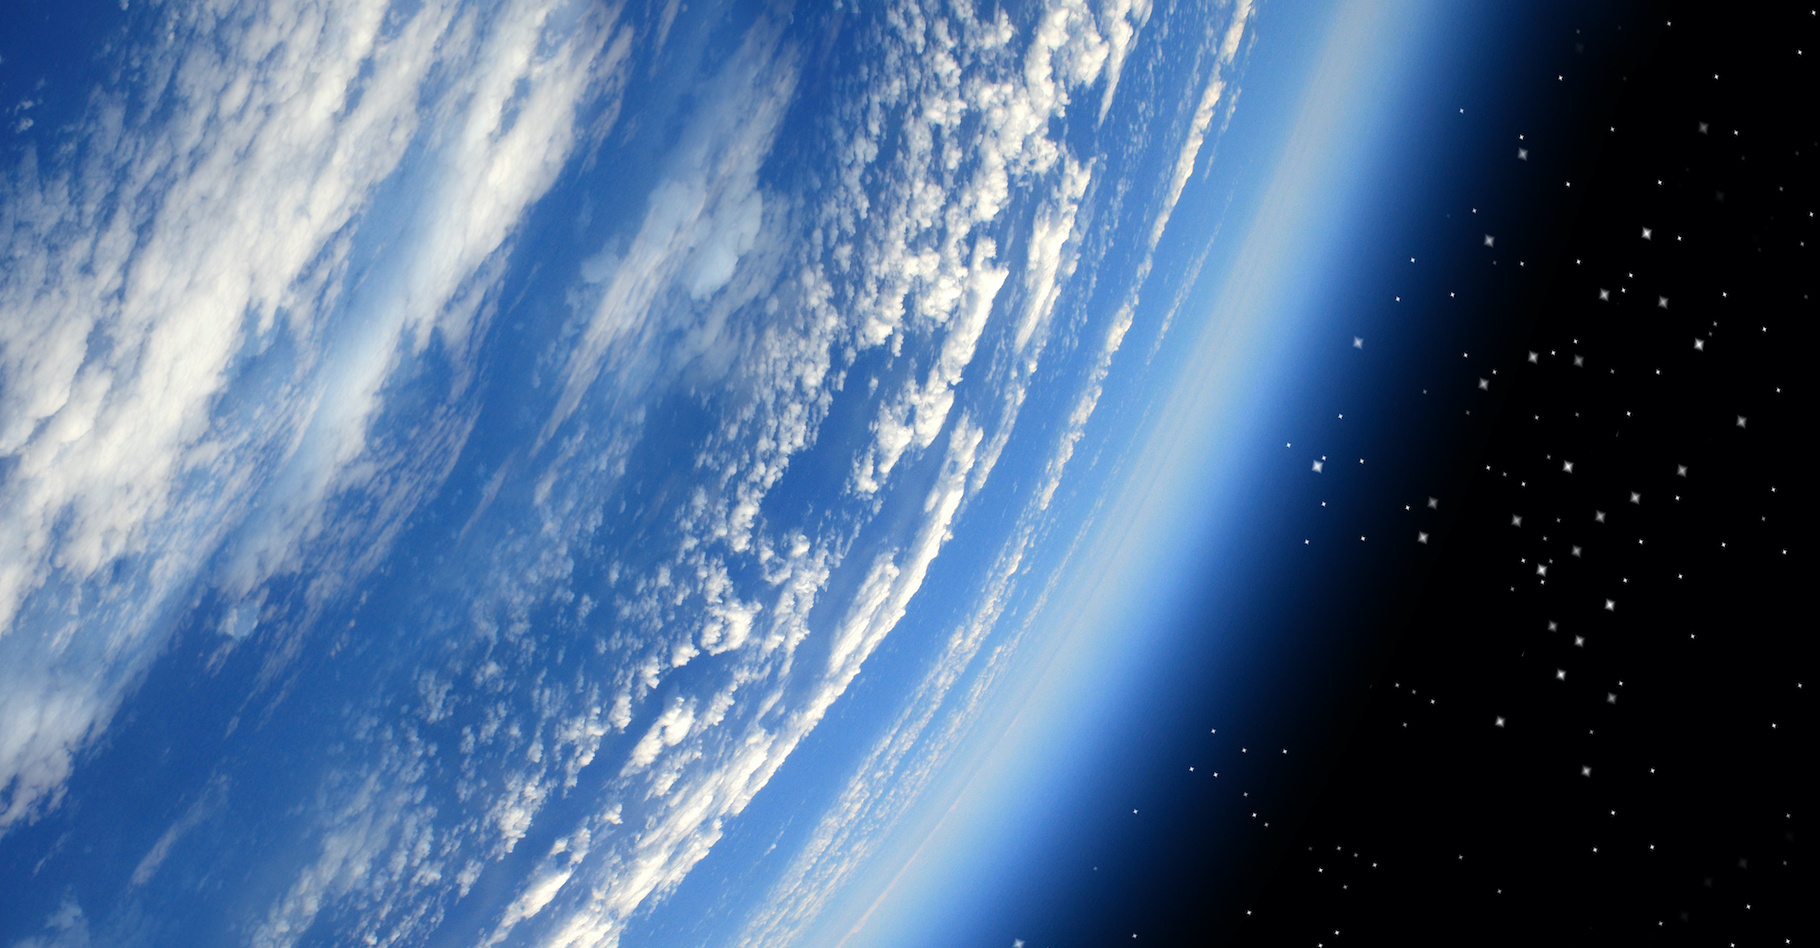 Alors que des travaux avaient laissé entendre que de l’oxygène avait fait son apparition dans l’atmosphère de la Terre avant celui que les chercheurs appellent l’événement de Grande oxygénation, une nouvelle étude remet aujourd’hui l’idée en cause. © @nt, Adobe Stock